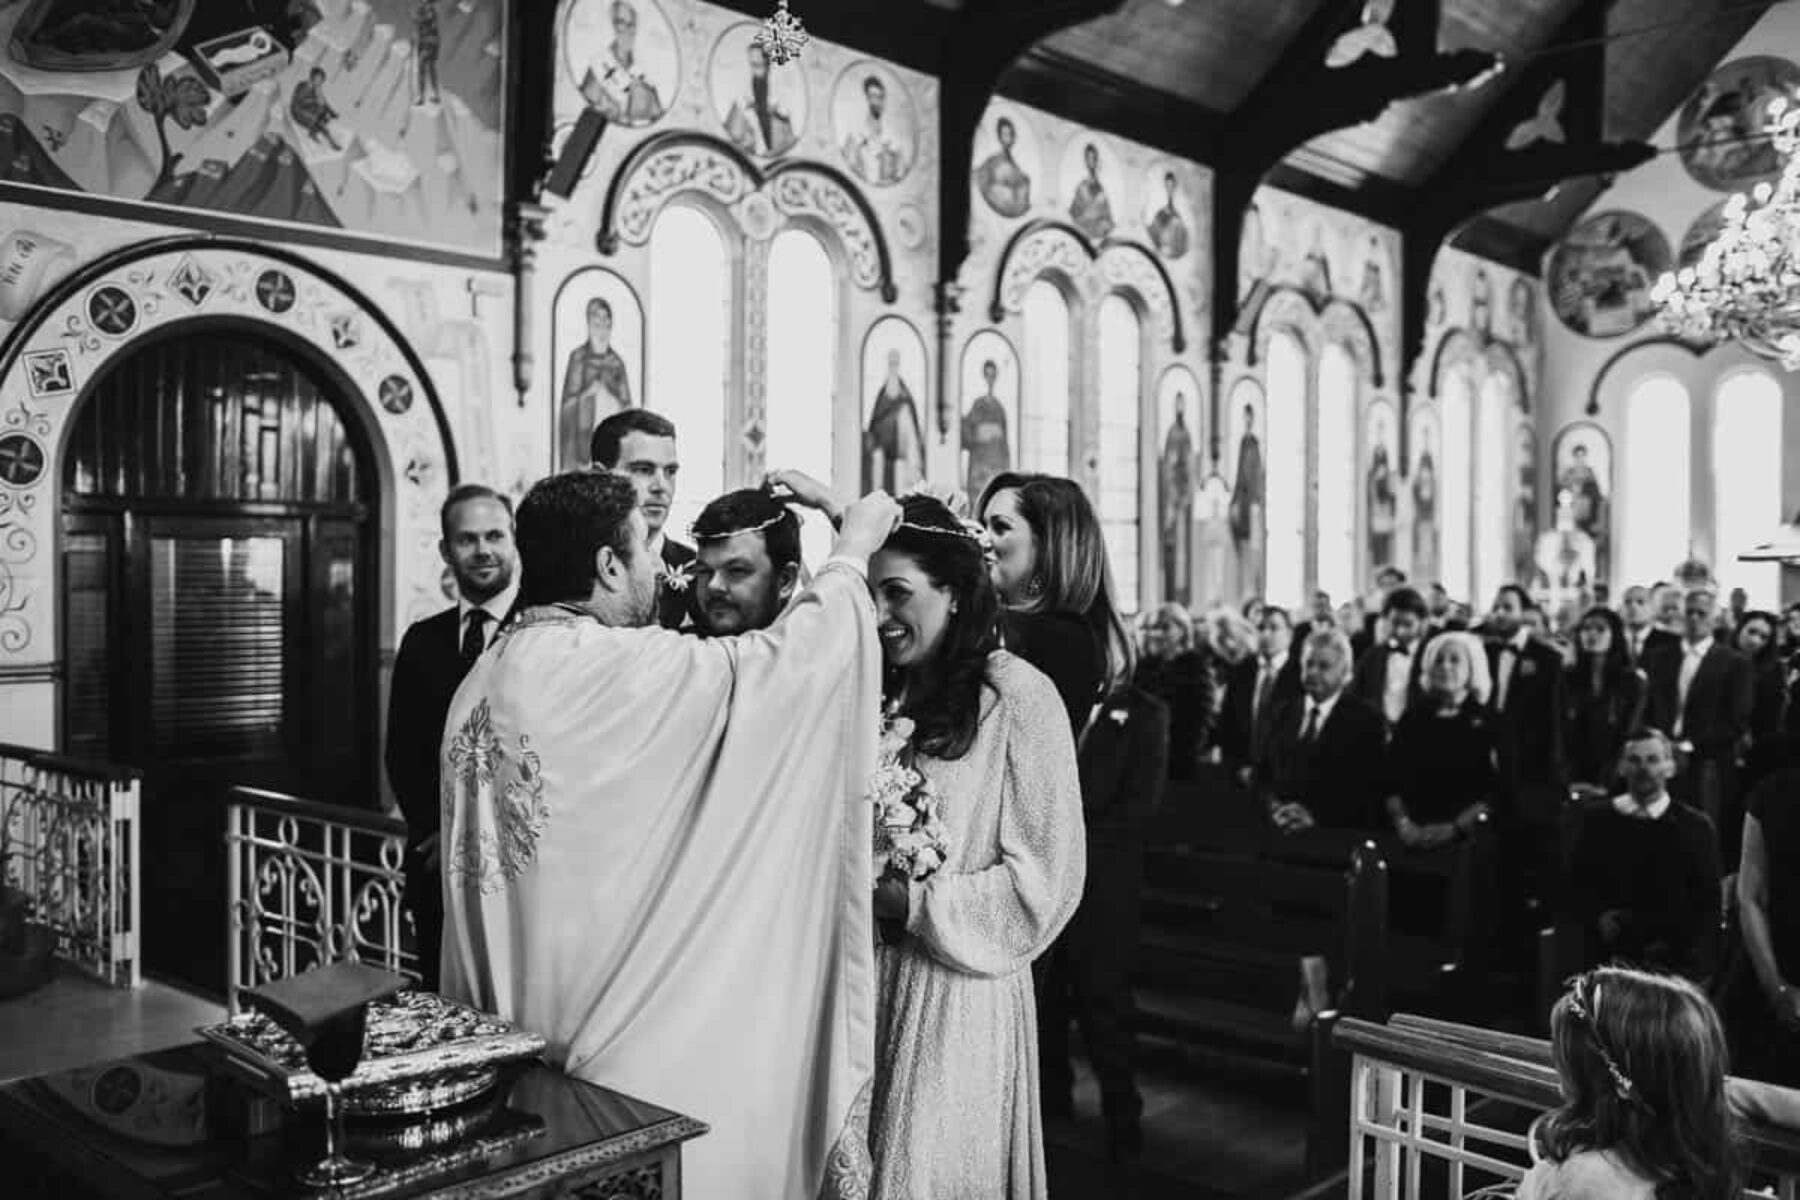 Greek Orthodox Church wedding Melbourne - photography by Daniel Brannan